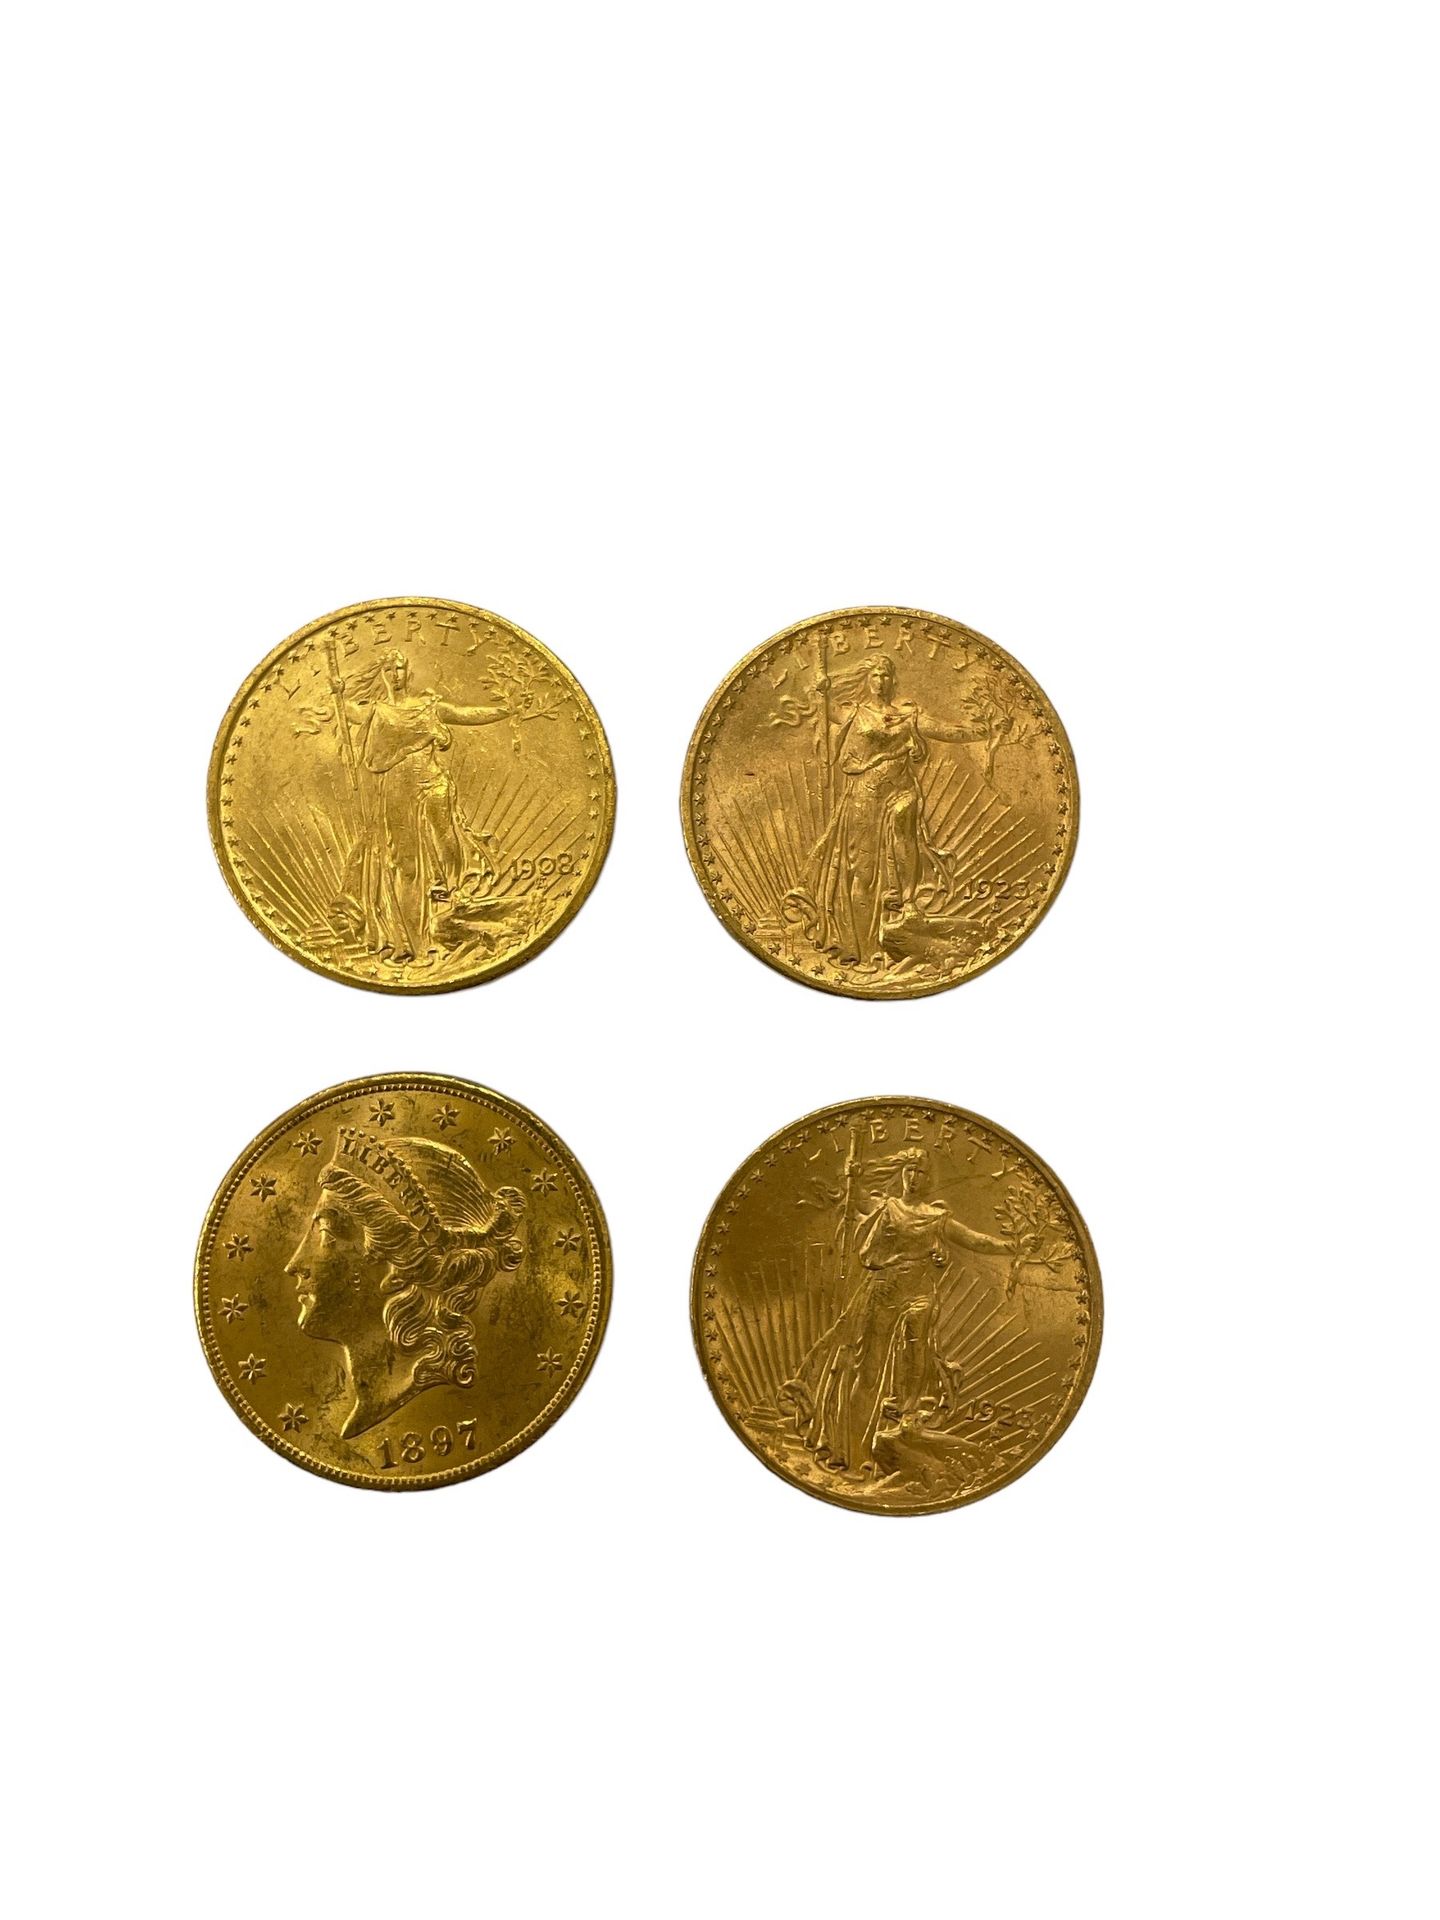 Null ESTADOS UNIDOS
4 piezas 20 dólares oro
Peso : 133,5 g